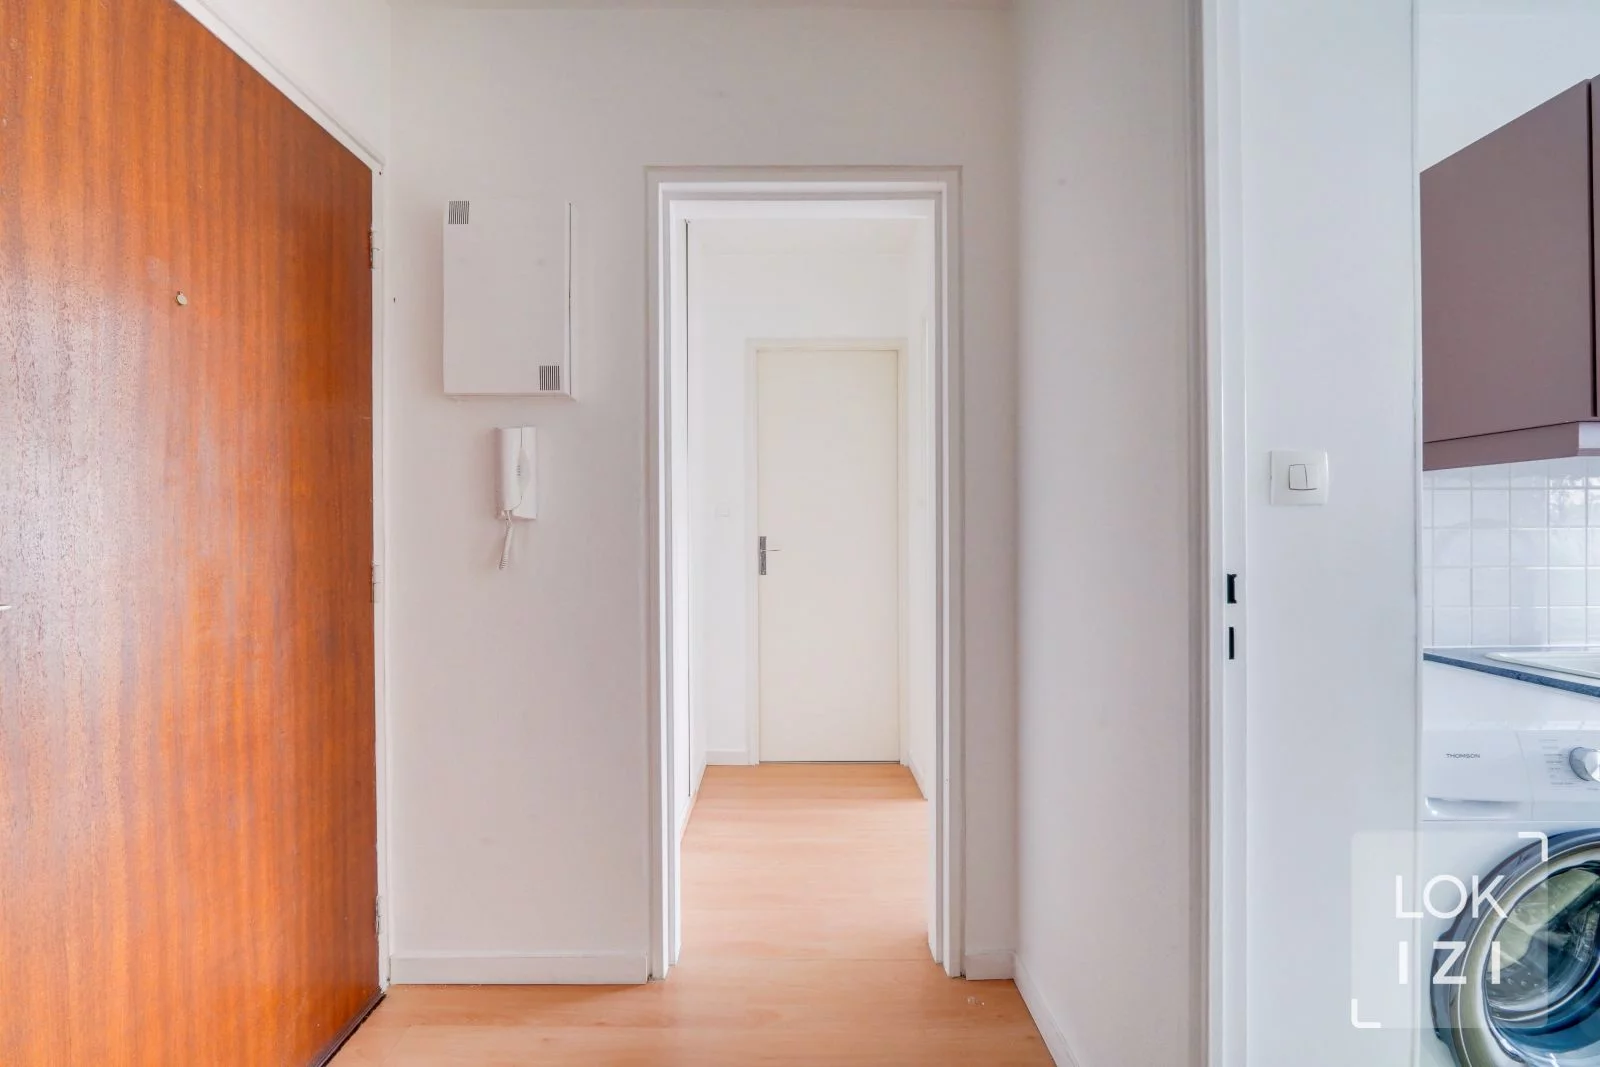 Location appartement meublé 2 pièces 44m²  (Bordeaux - Grand Parc)